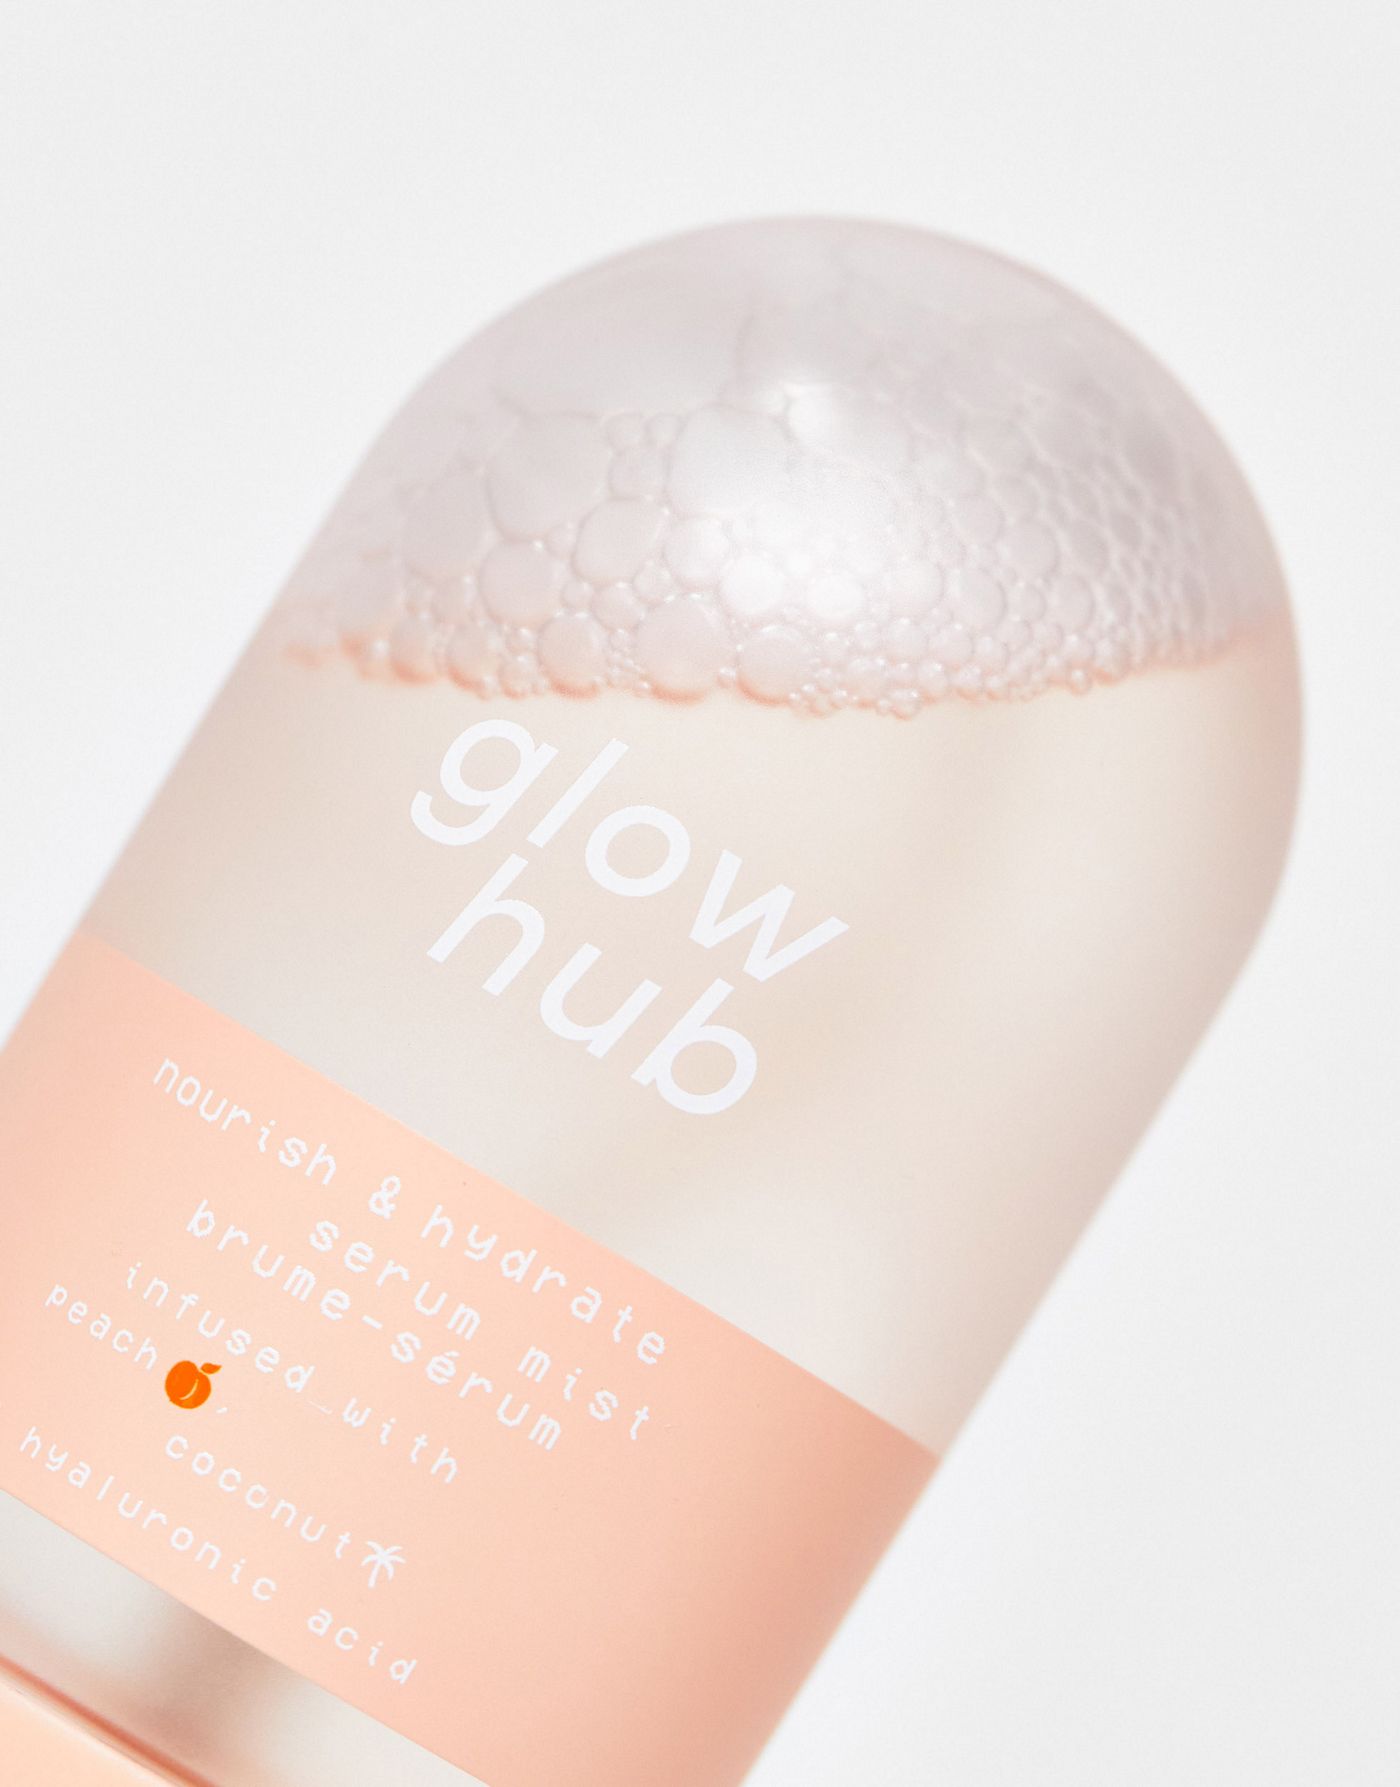 Glow Hub Skin Survival Pack  (Save 18%)